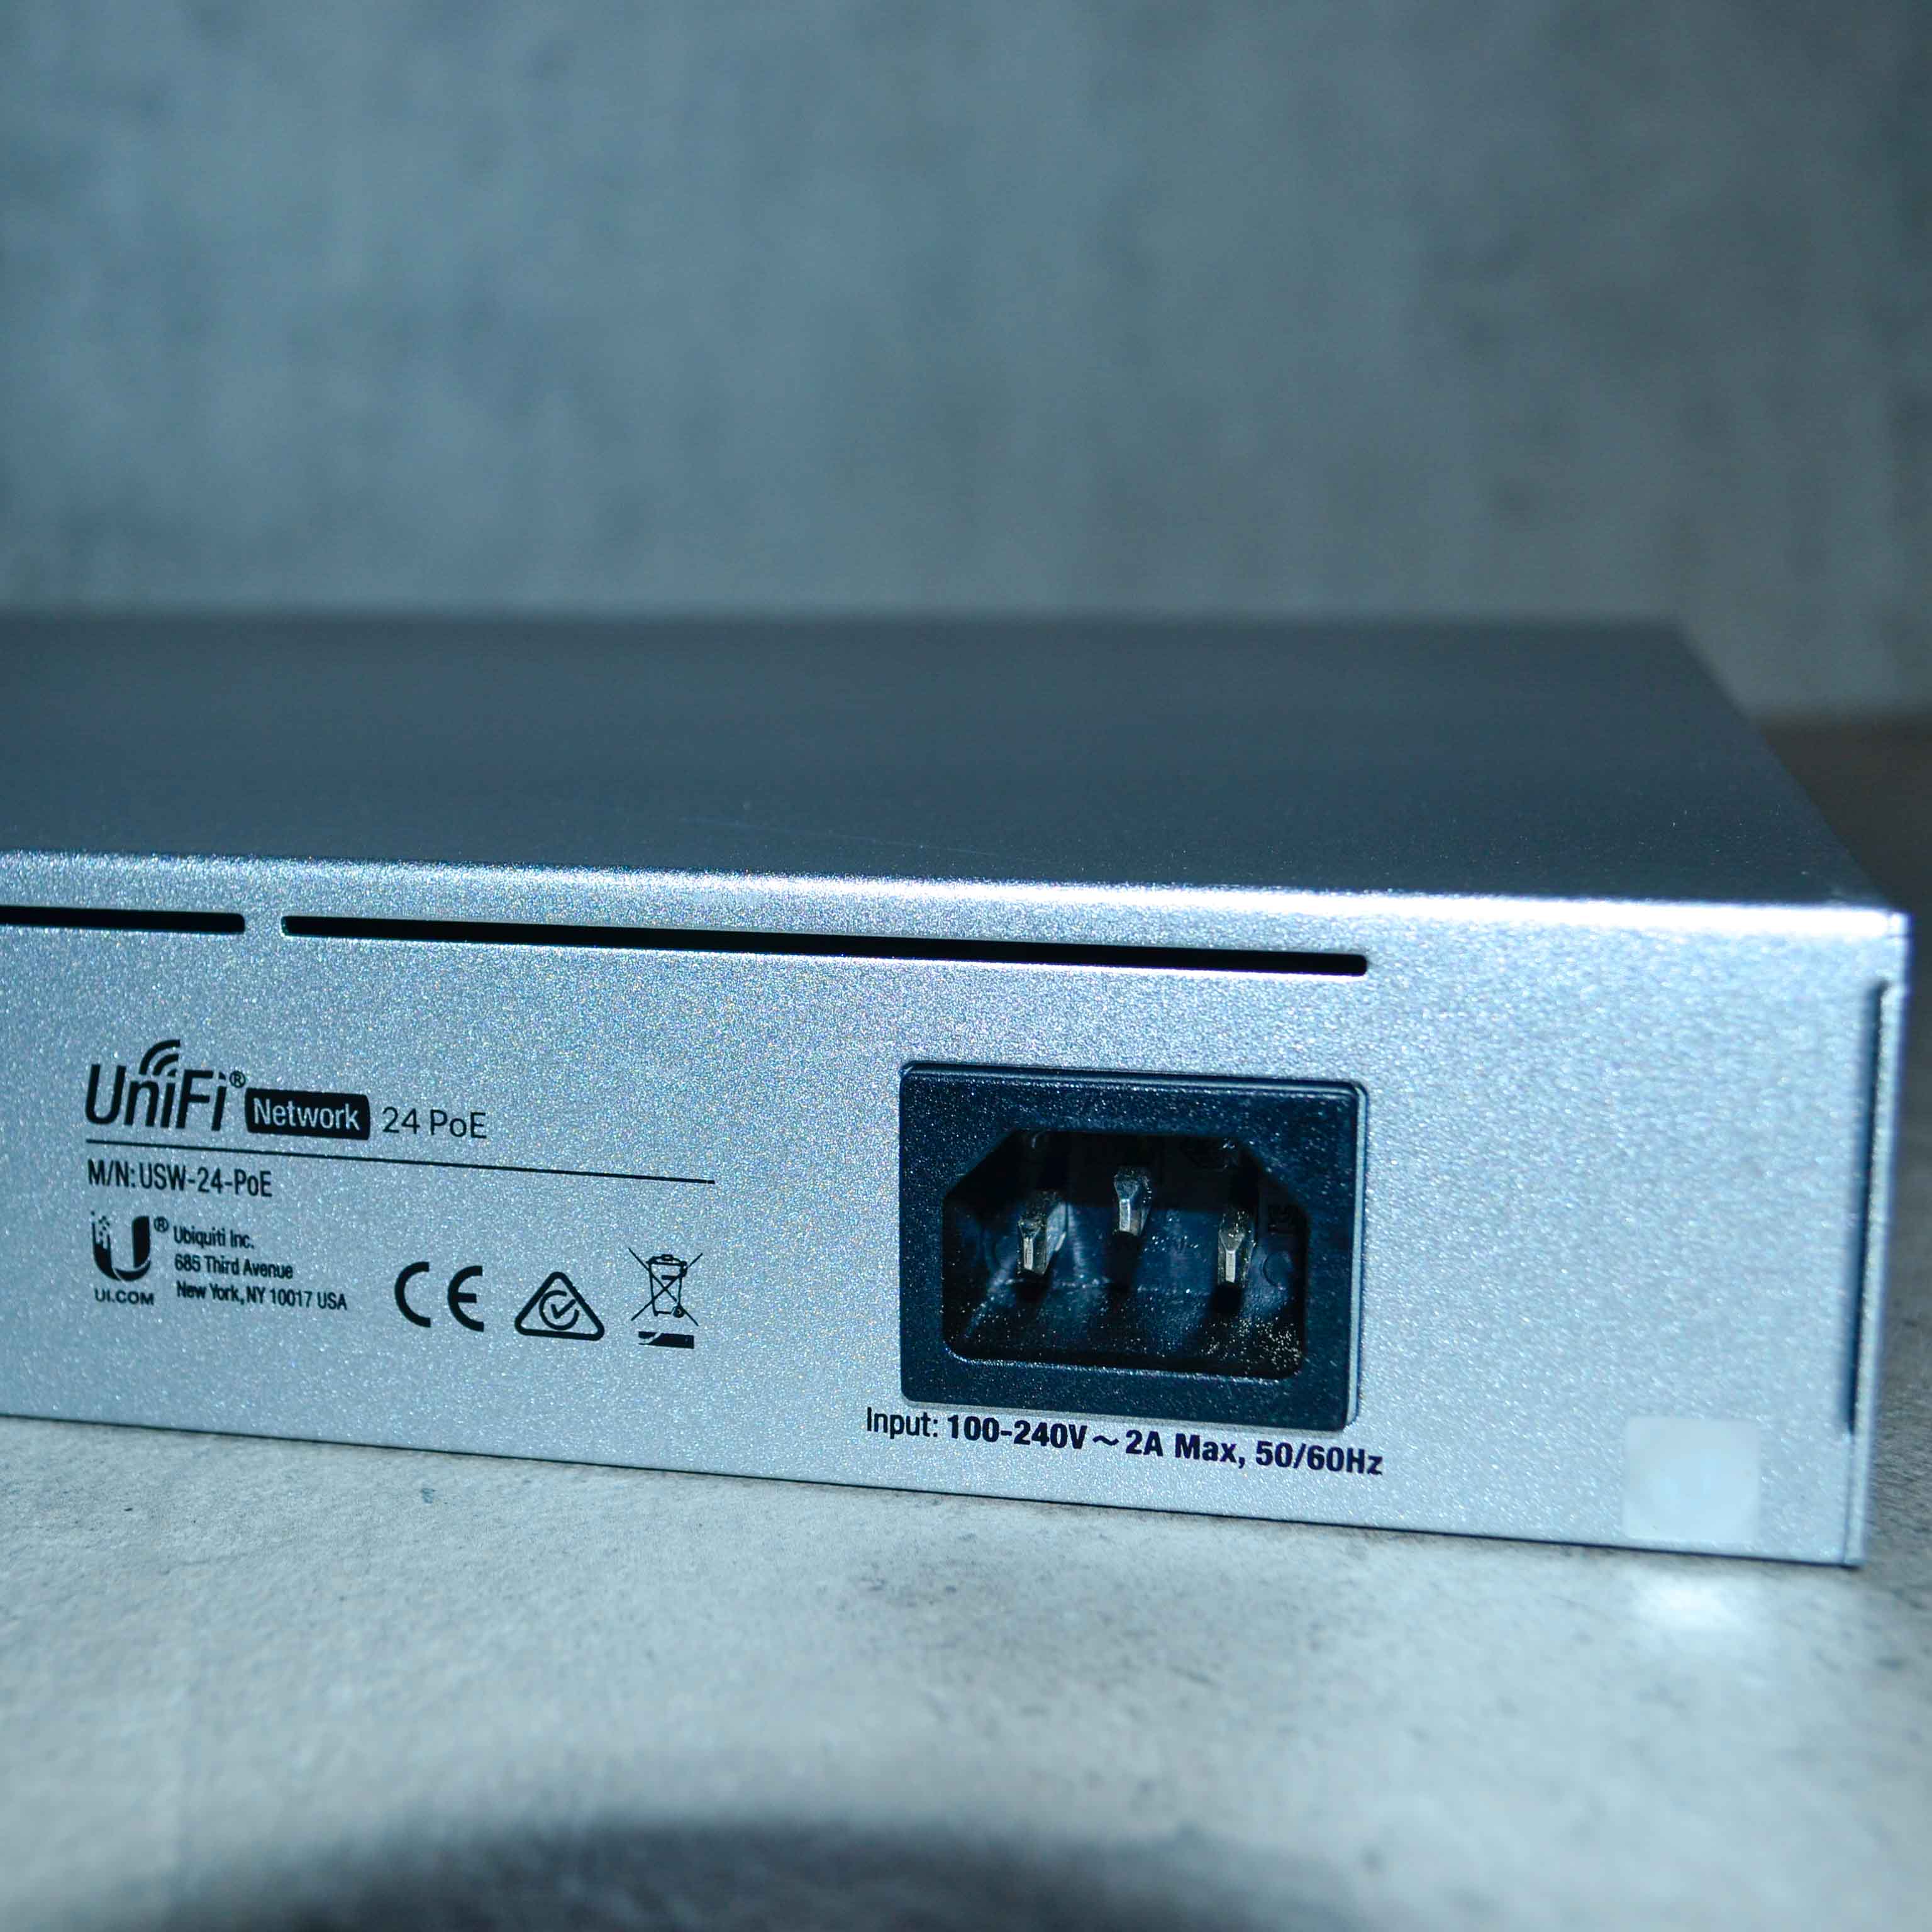 UniFi Switch 24 PoE, USW-24-POE